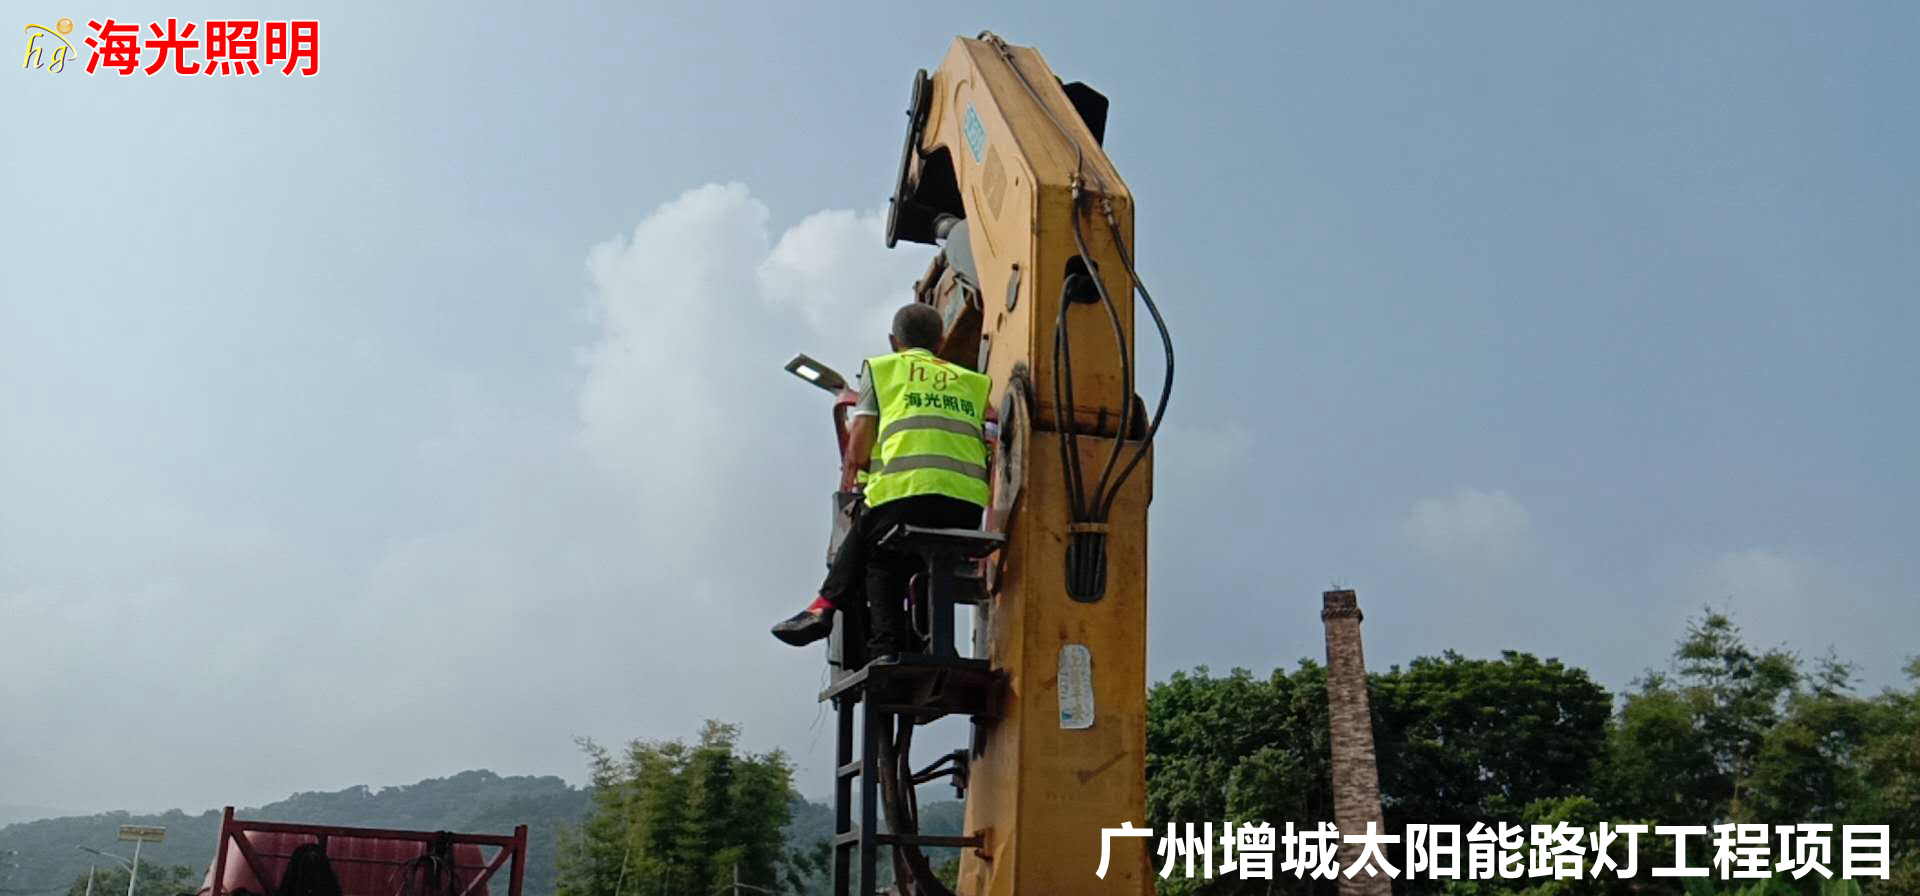 广州增城4600套太阳能路灯工程项目昨日正式开工进场